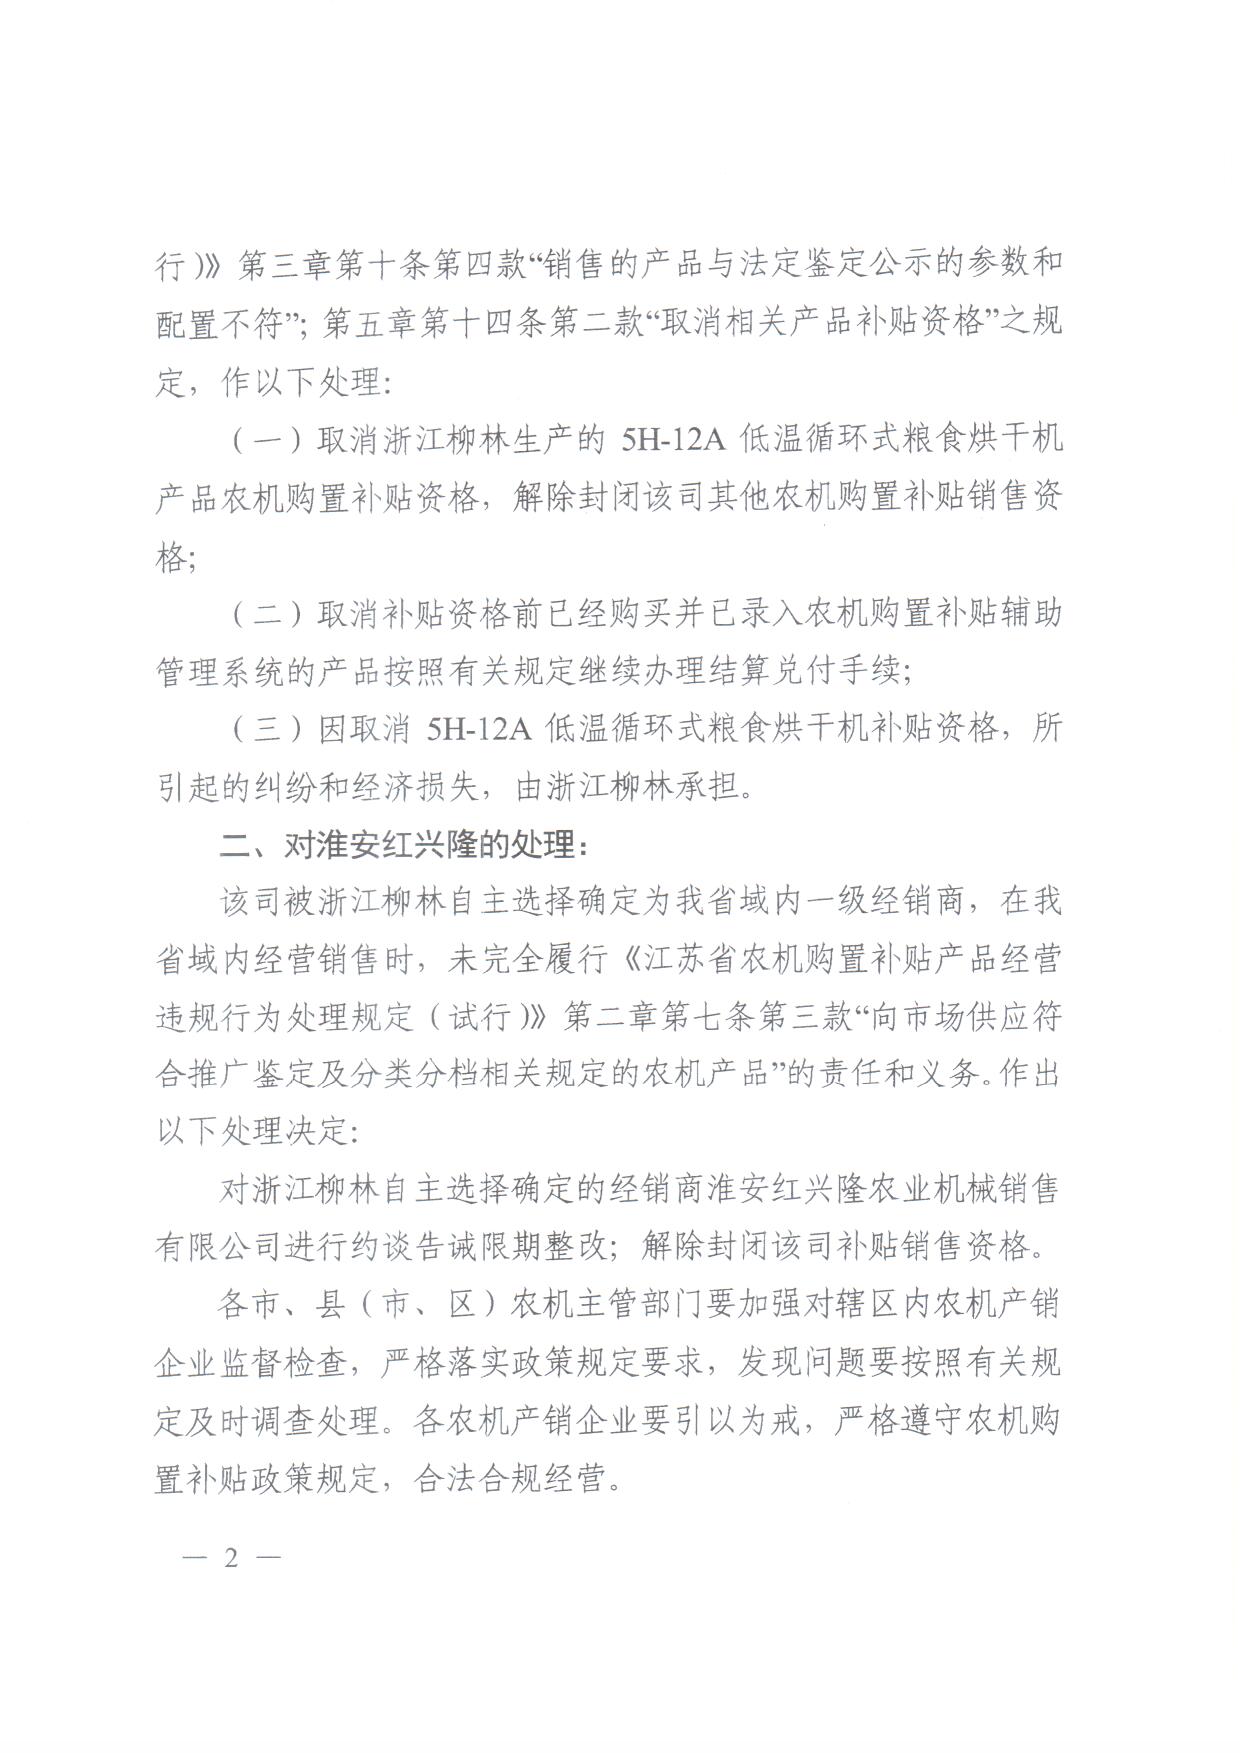 关于取消淅江柳林农业机械股份有限公司粮食烘干机产品补贴资格的通知2.jpg